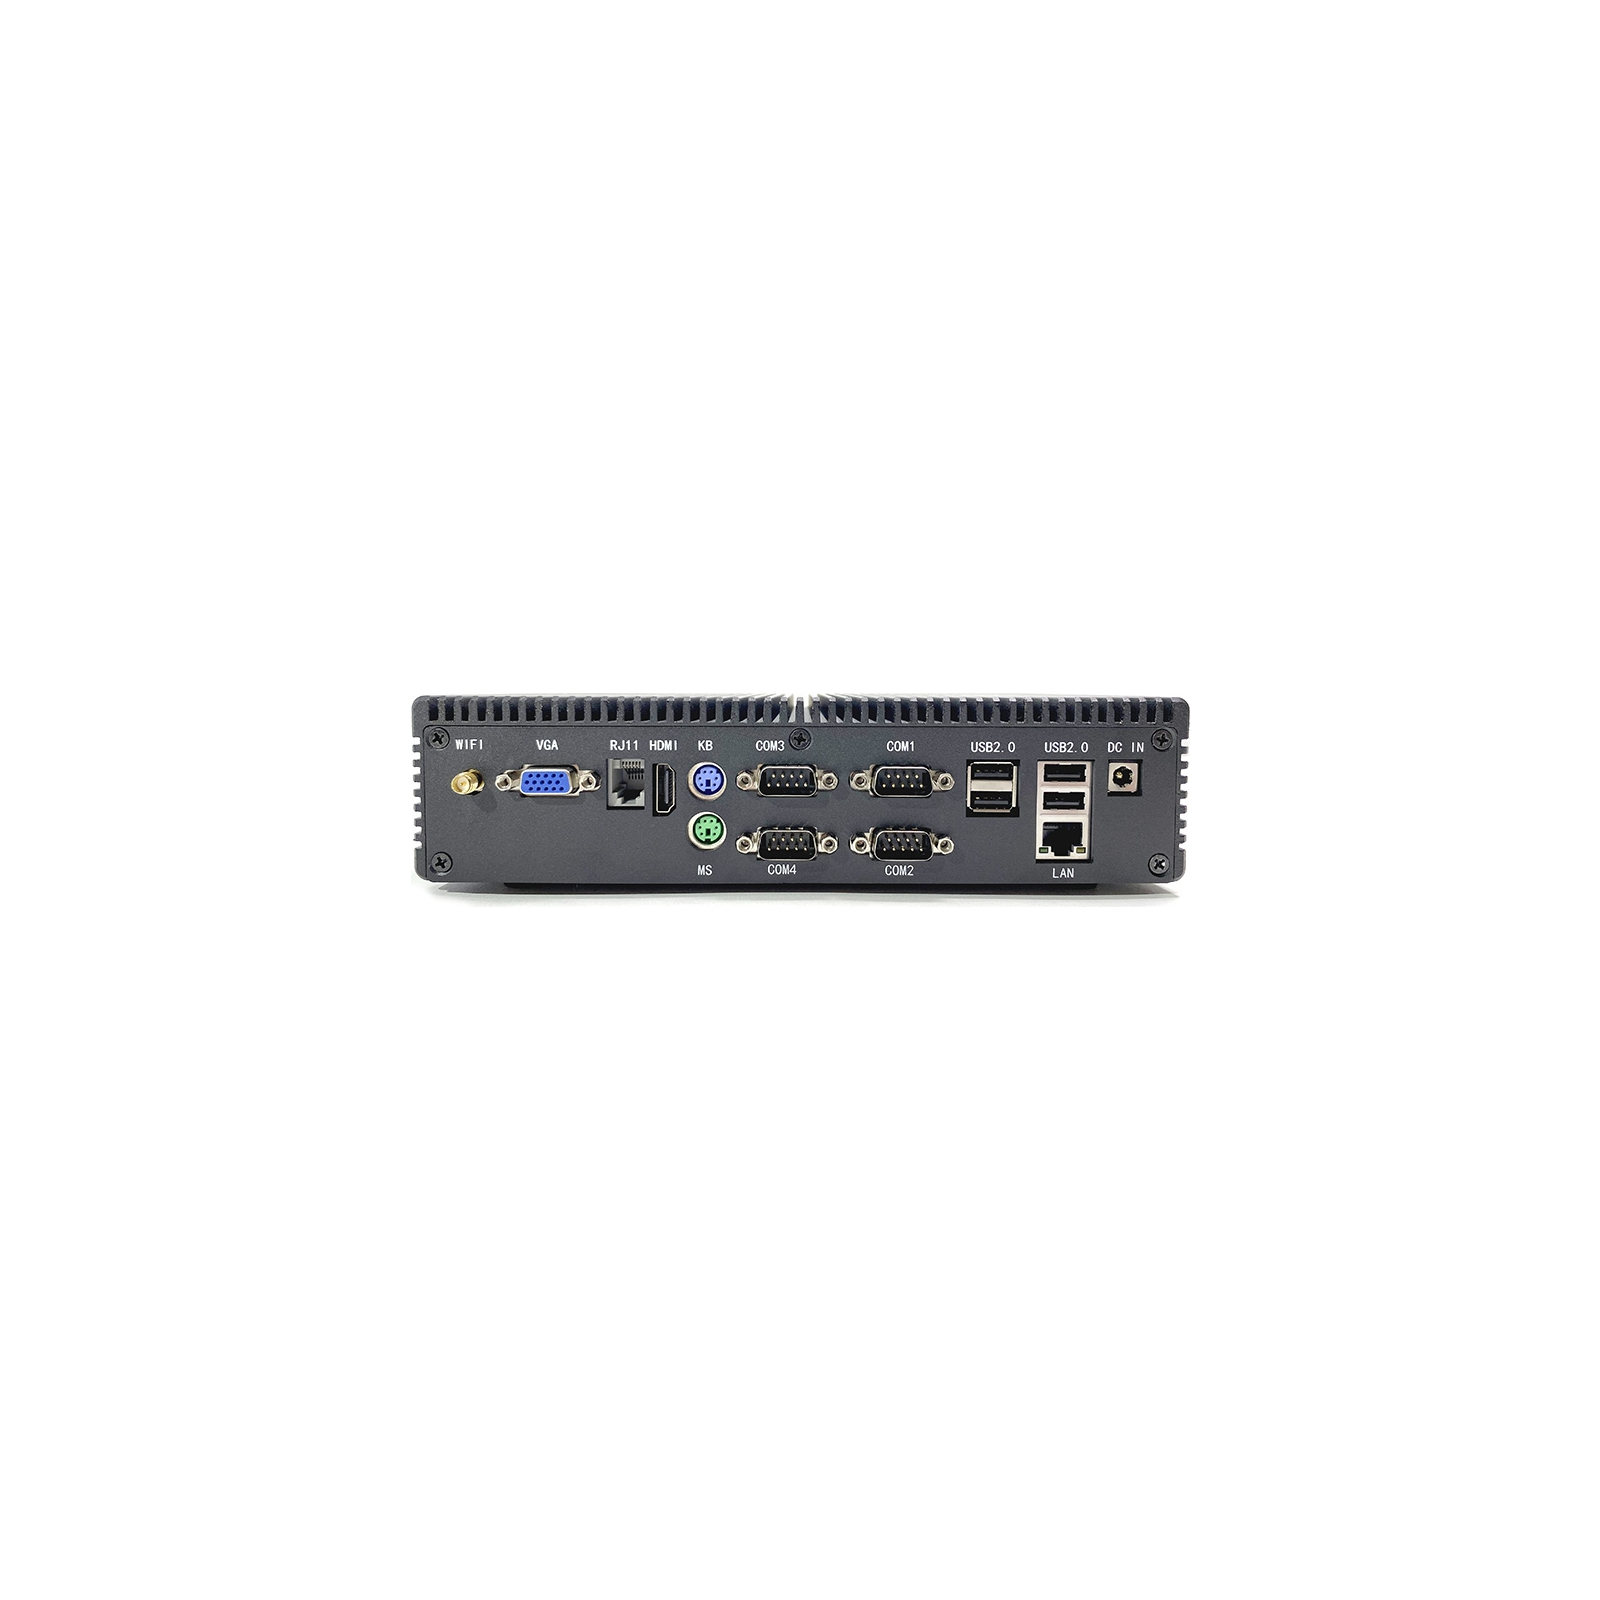 Промышленный ПК Geos BOX-2, J1900, 4Gb/128Gb/6xUSB/4xRS232/Ethernet (GEOS BOX-2 SSD 4 Gb, ОП 128Gb) изображение 2